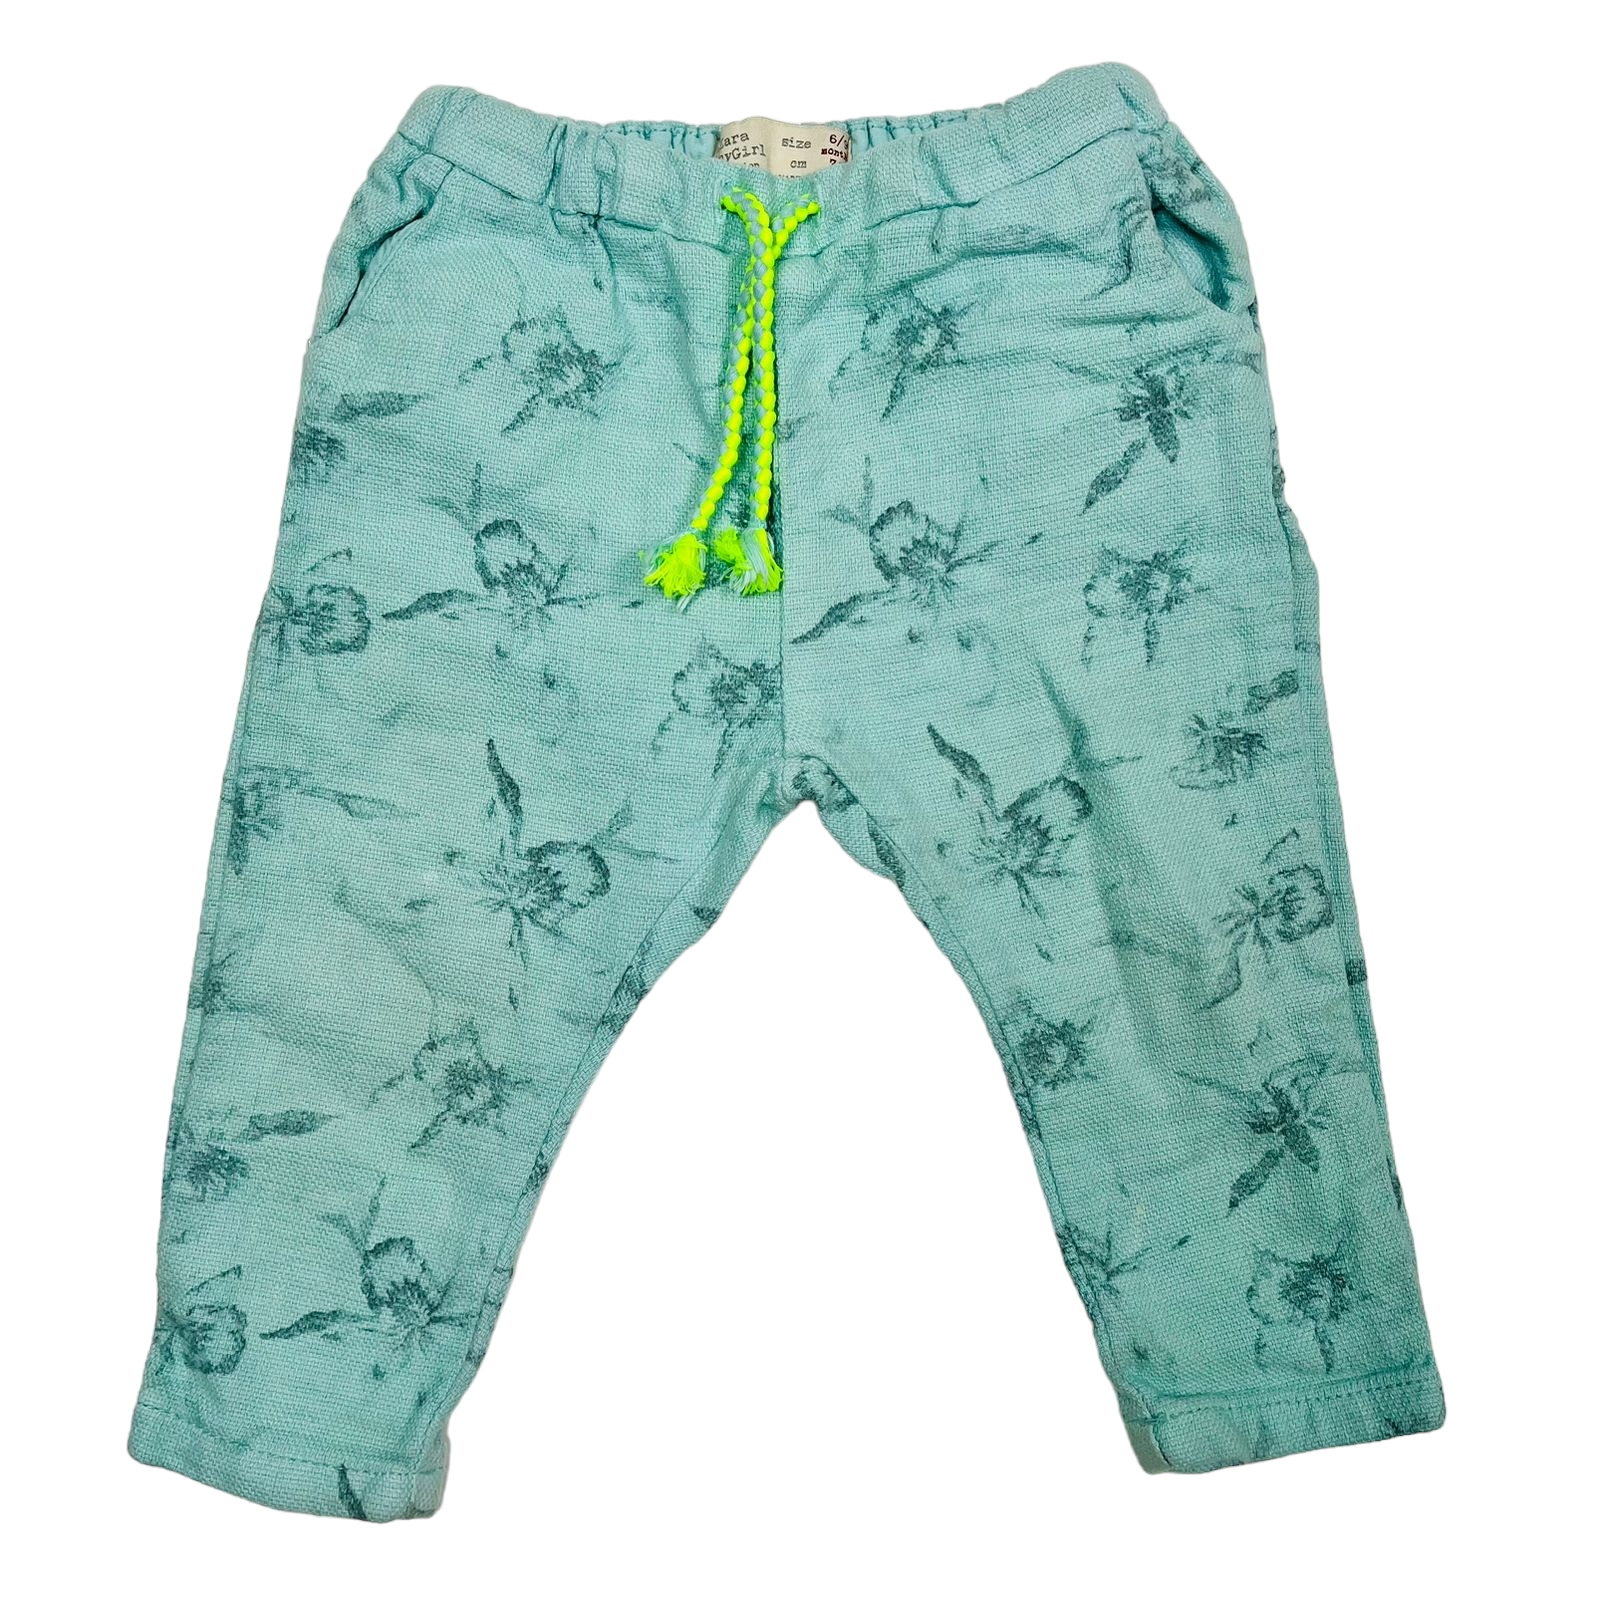 Pantalon turqueza con pretina y cordon verde neon diseño de flores